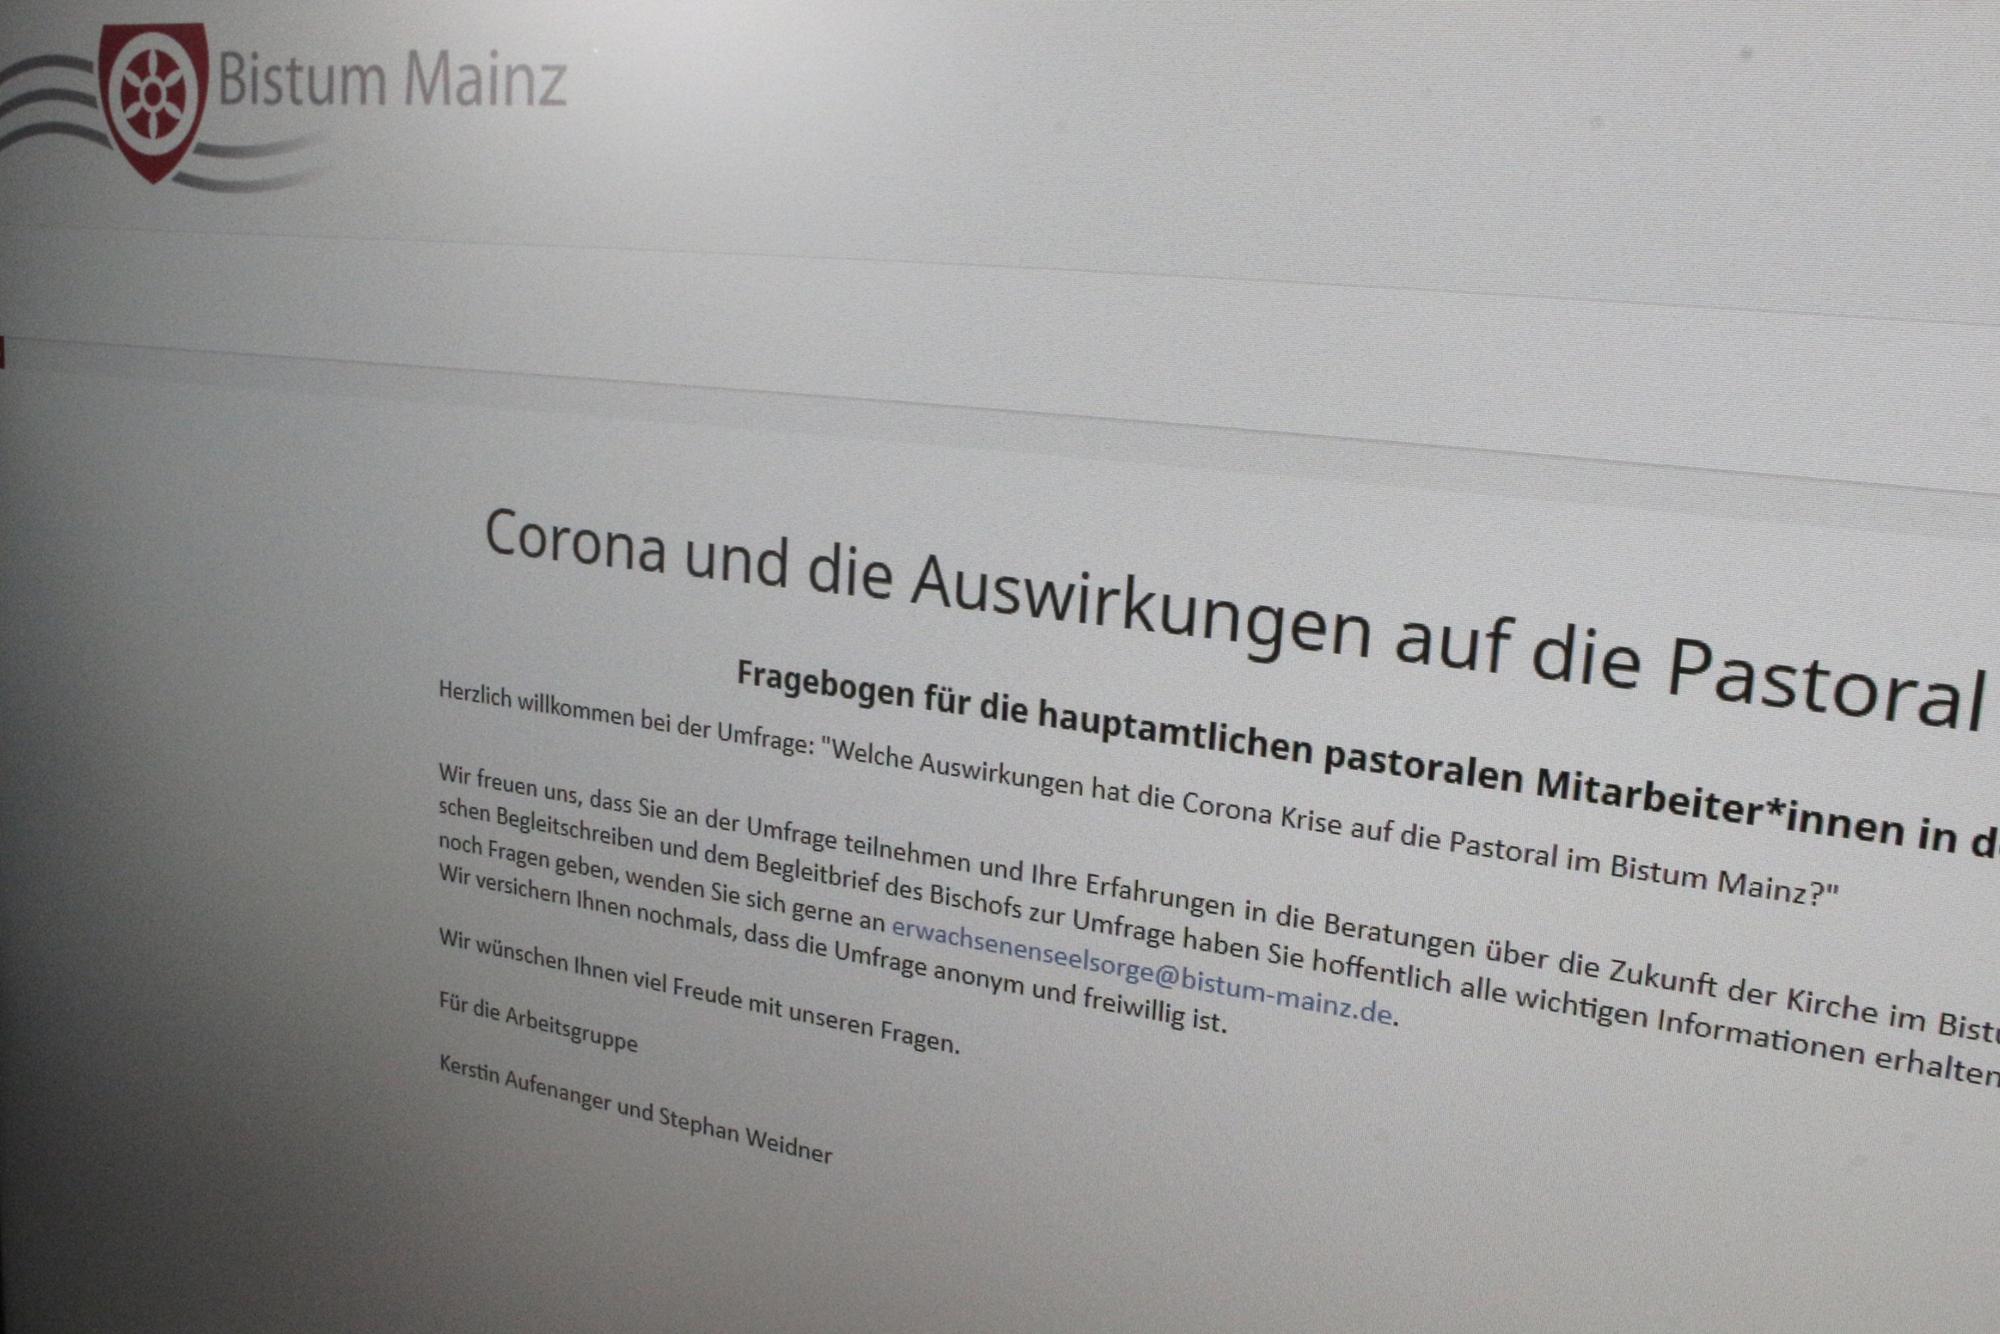 Seit 17. August läuft die interne Umfrage zur Corona-Krise. (c) Bistum Mainz / Blum